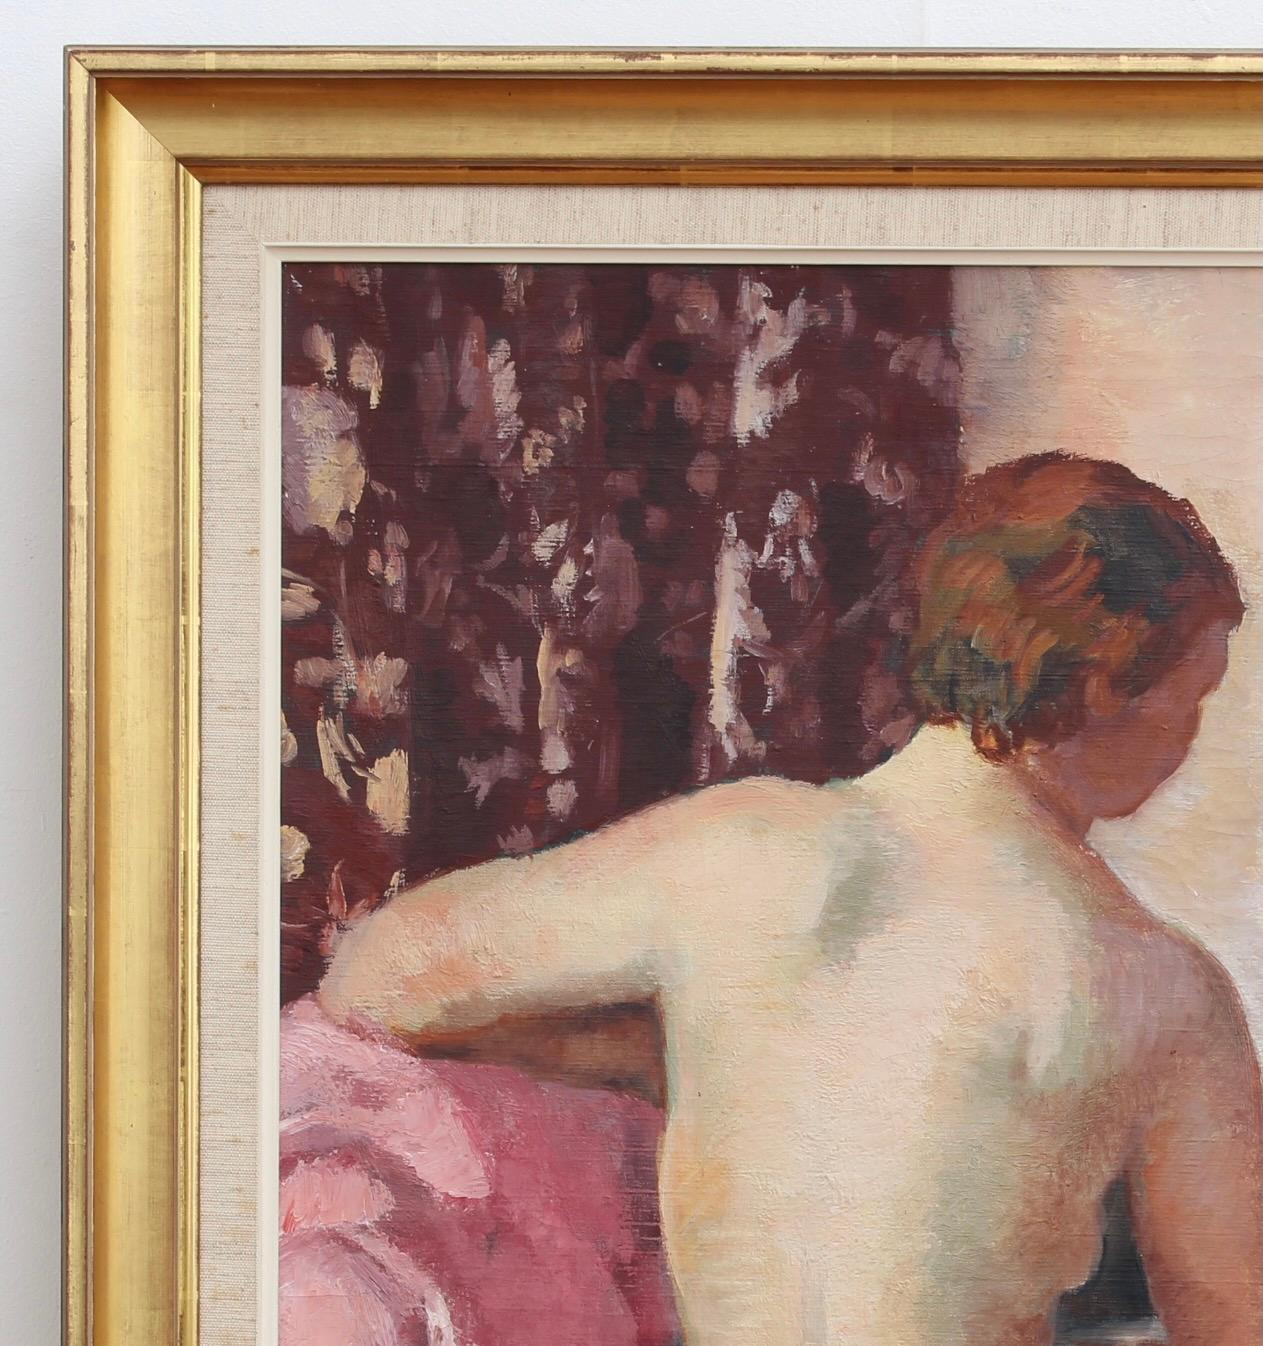 nu vu de dos, huile sur toile, par Charles Kvapil (1937). Depuis des siècles, le monde de l'art représente des nus sous une forme ou une autre. Les versions merveilleusement séduisantes de Kvapil sont probablement inspirées par Courbet et Cézanne.